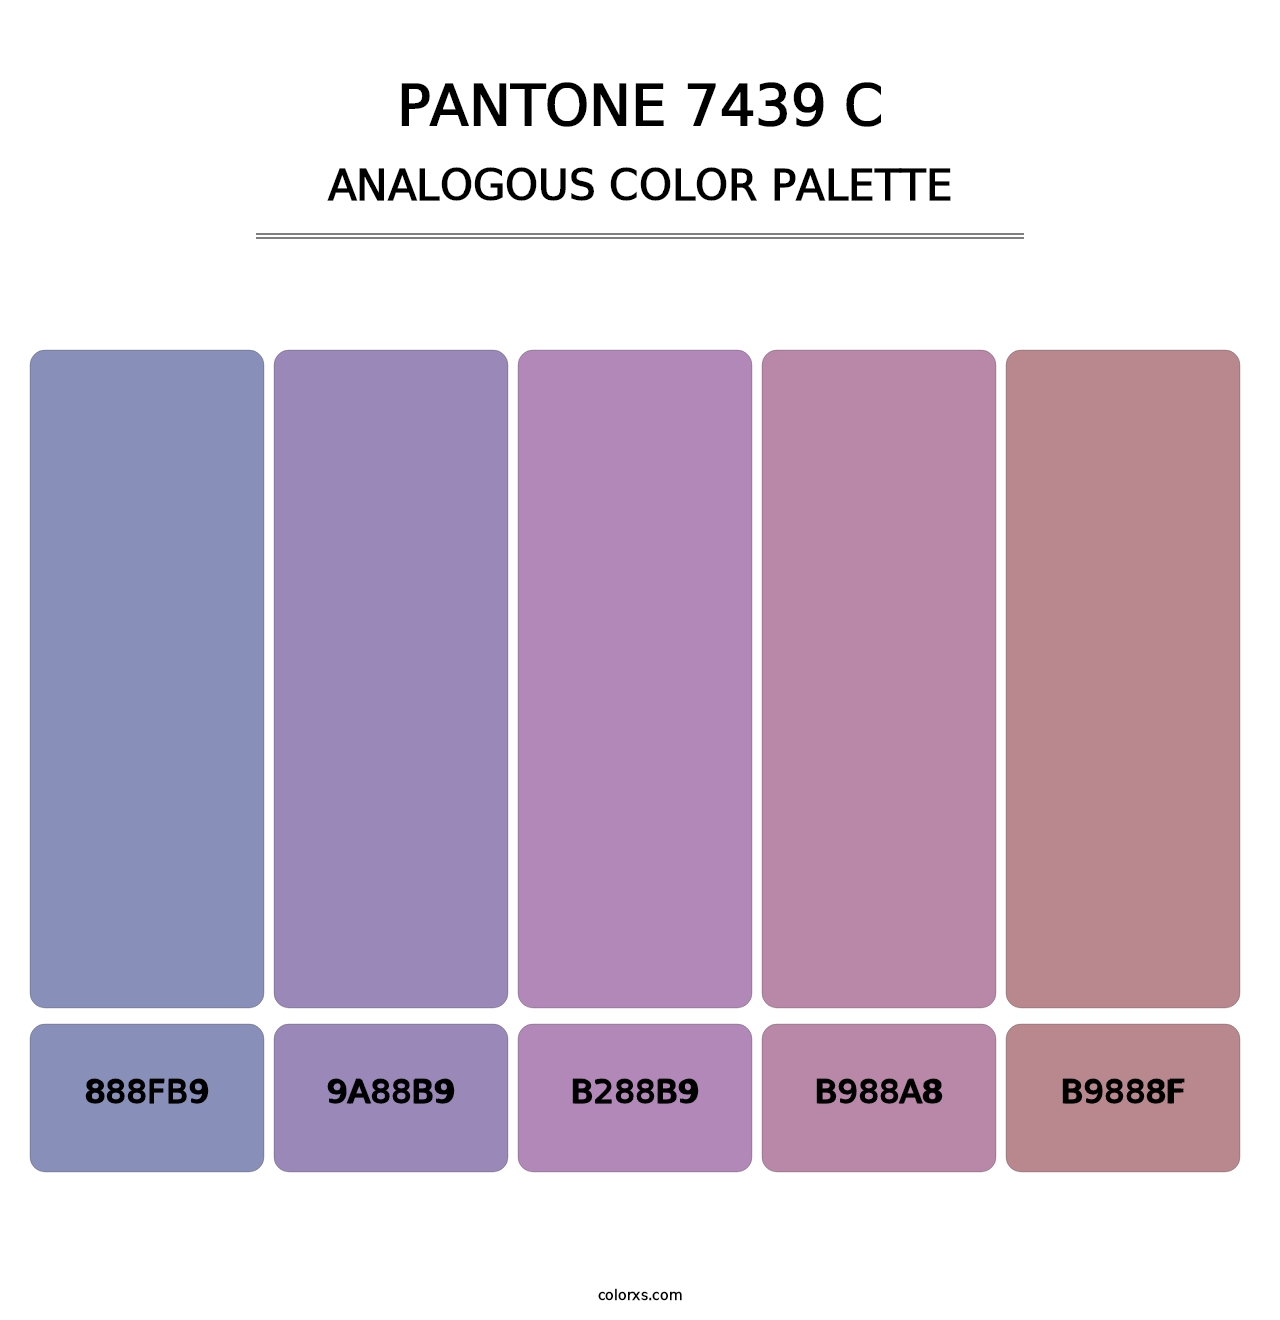 PANTONE 7439 C - Analogous Color Palette